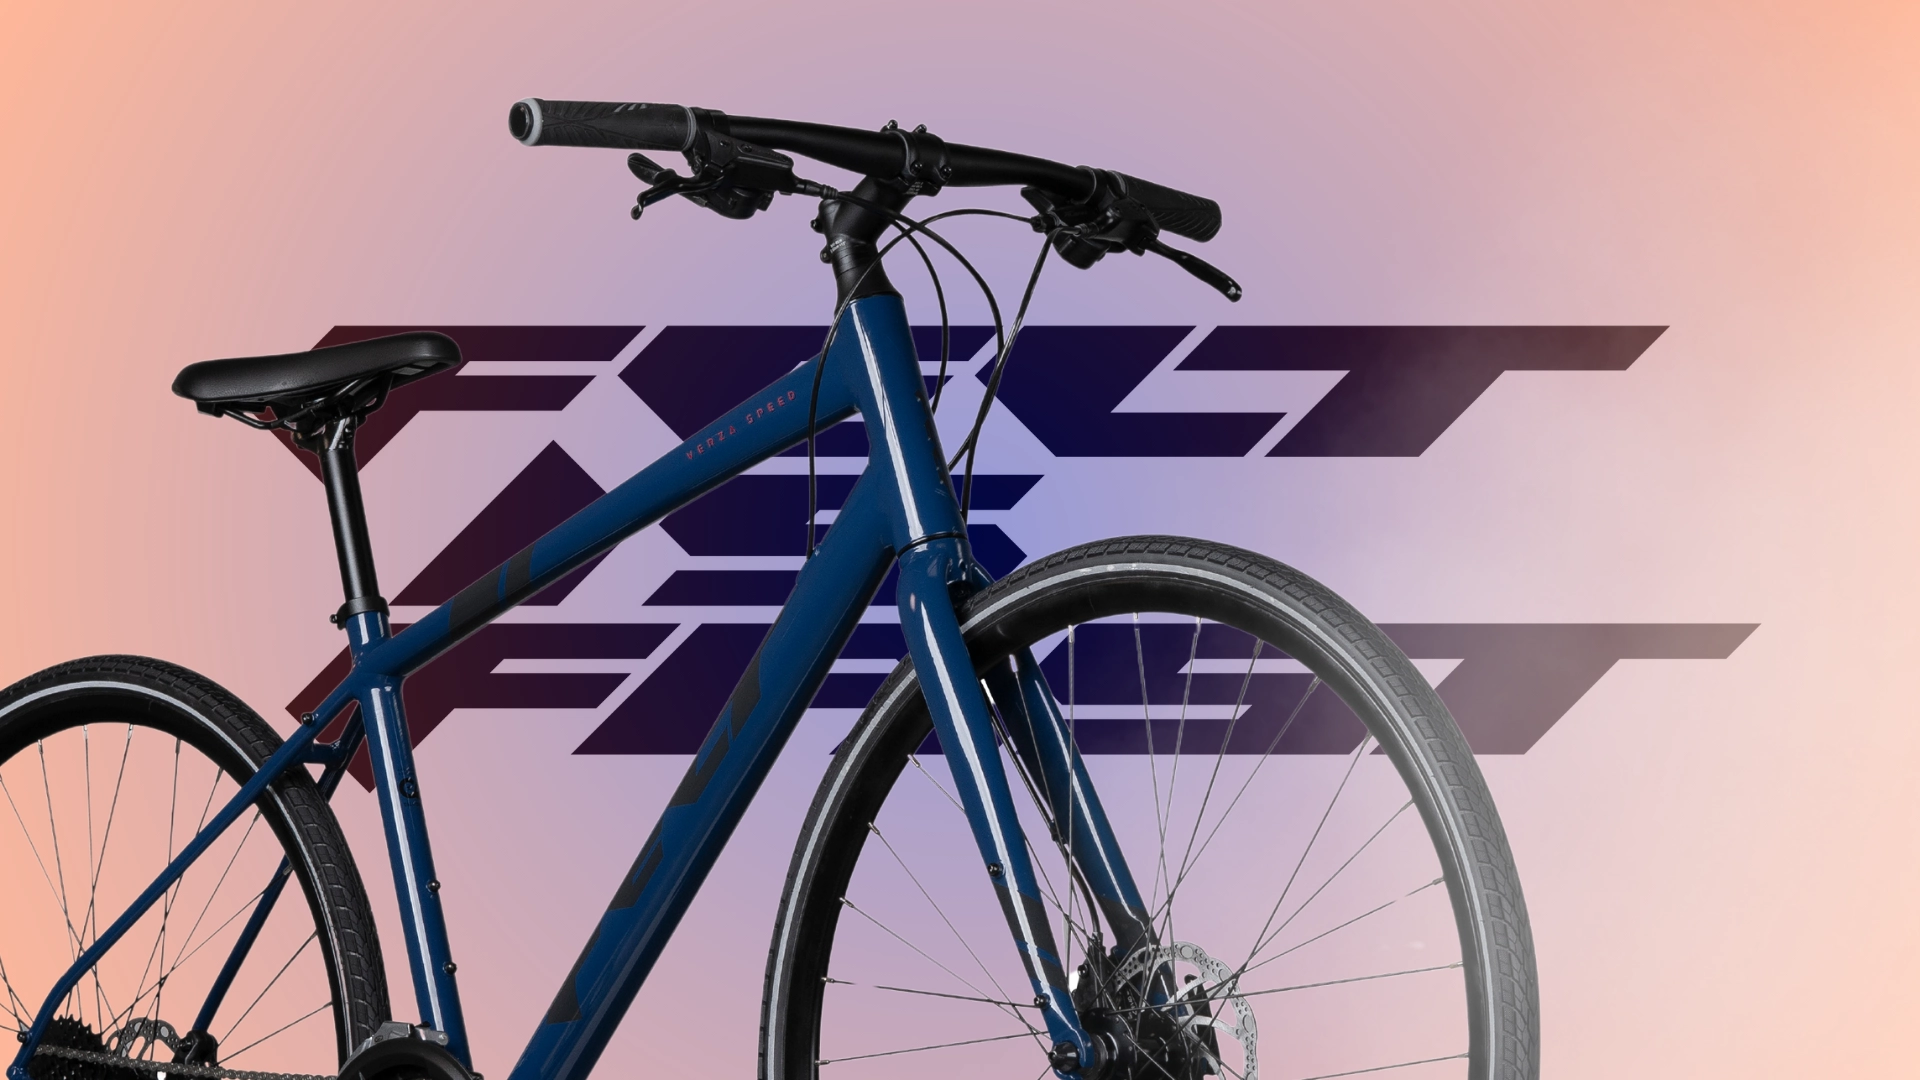 Verzaシリーズ スピードクロスバイク | Felt公式日本語サイト